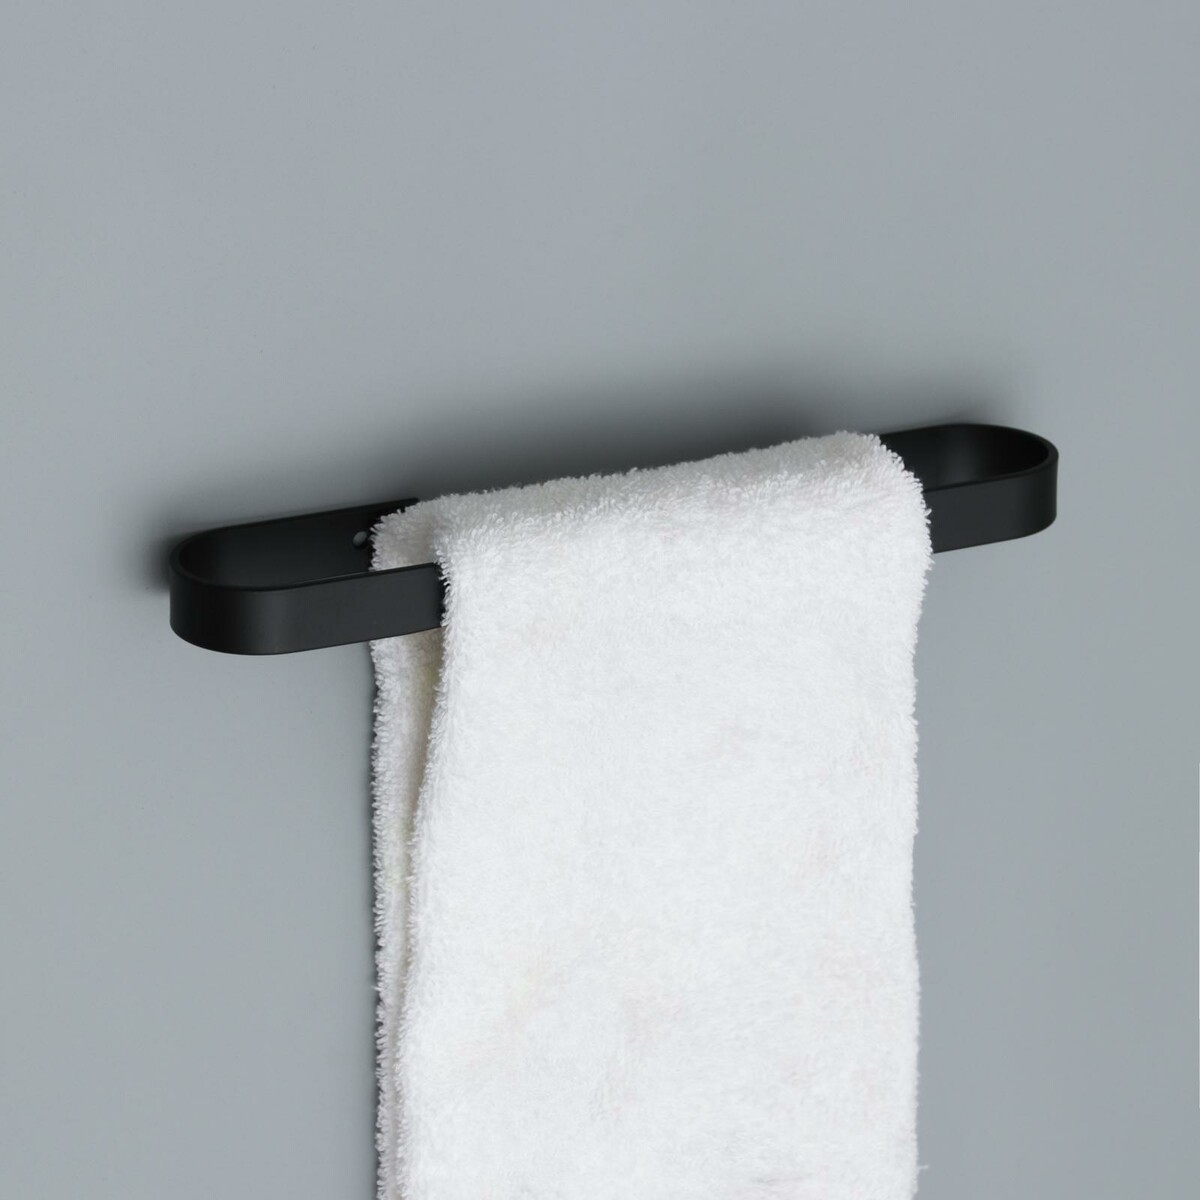 Держатель для полотенец штольц stölz, 24×6 см, цвет черный